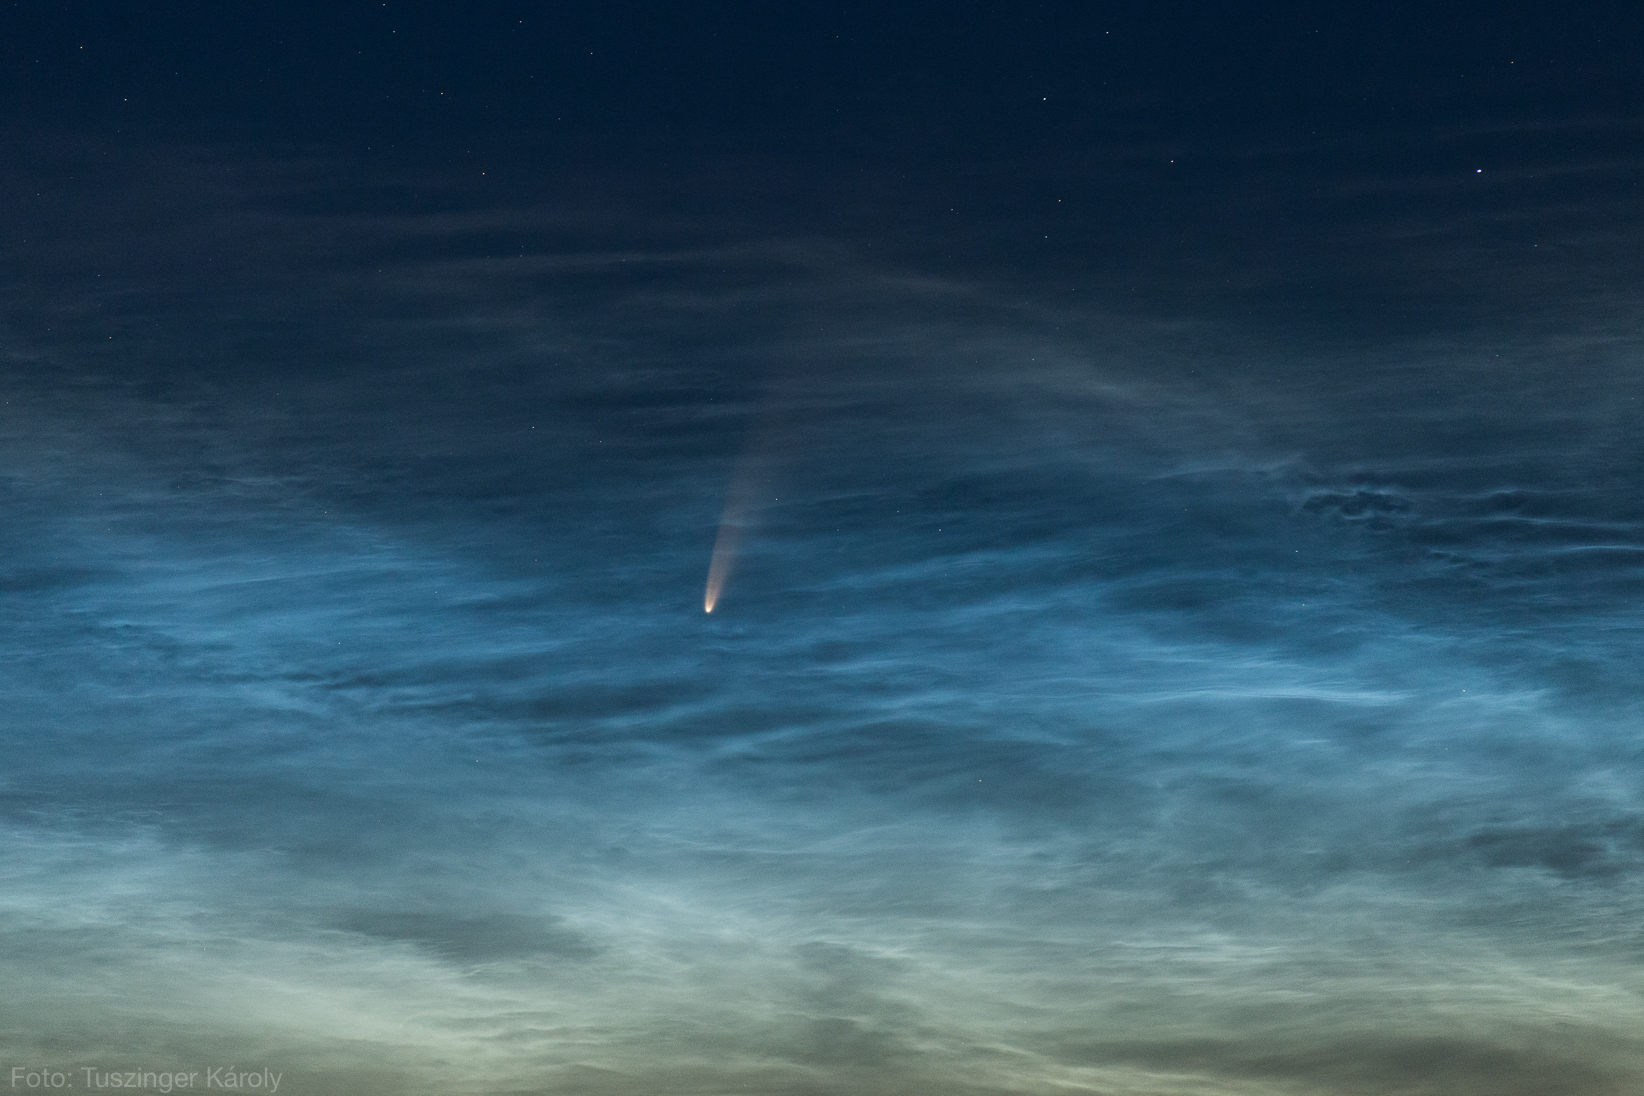 Tuszinger Károly fotója a C/2020 F3 (NEOWISE) üstökösről